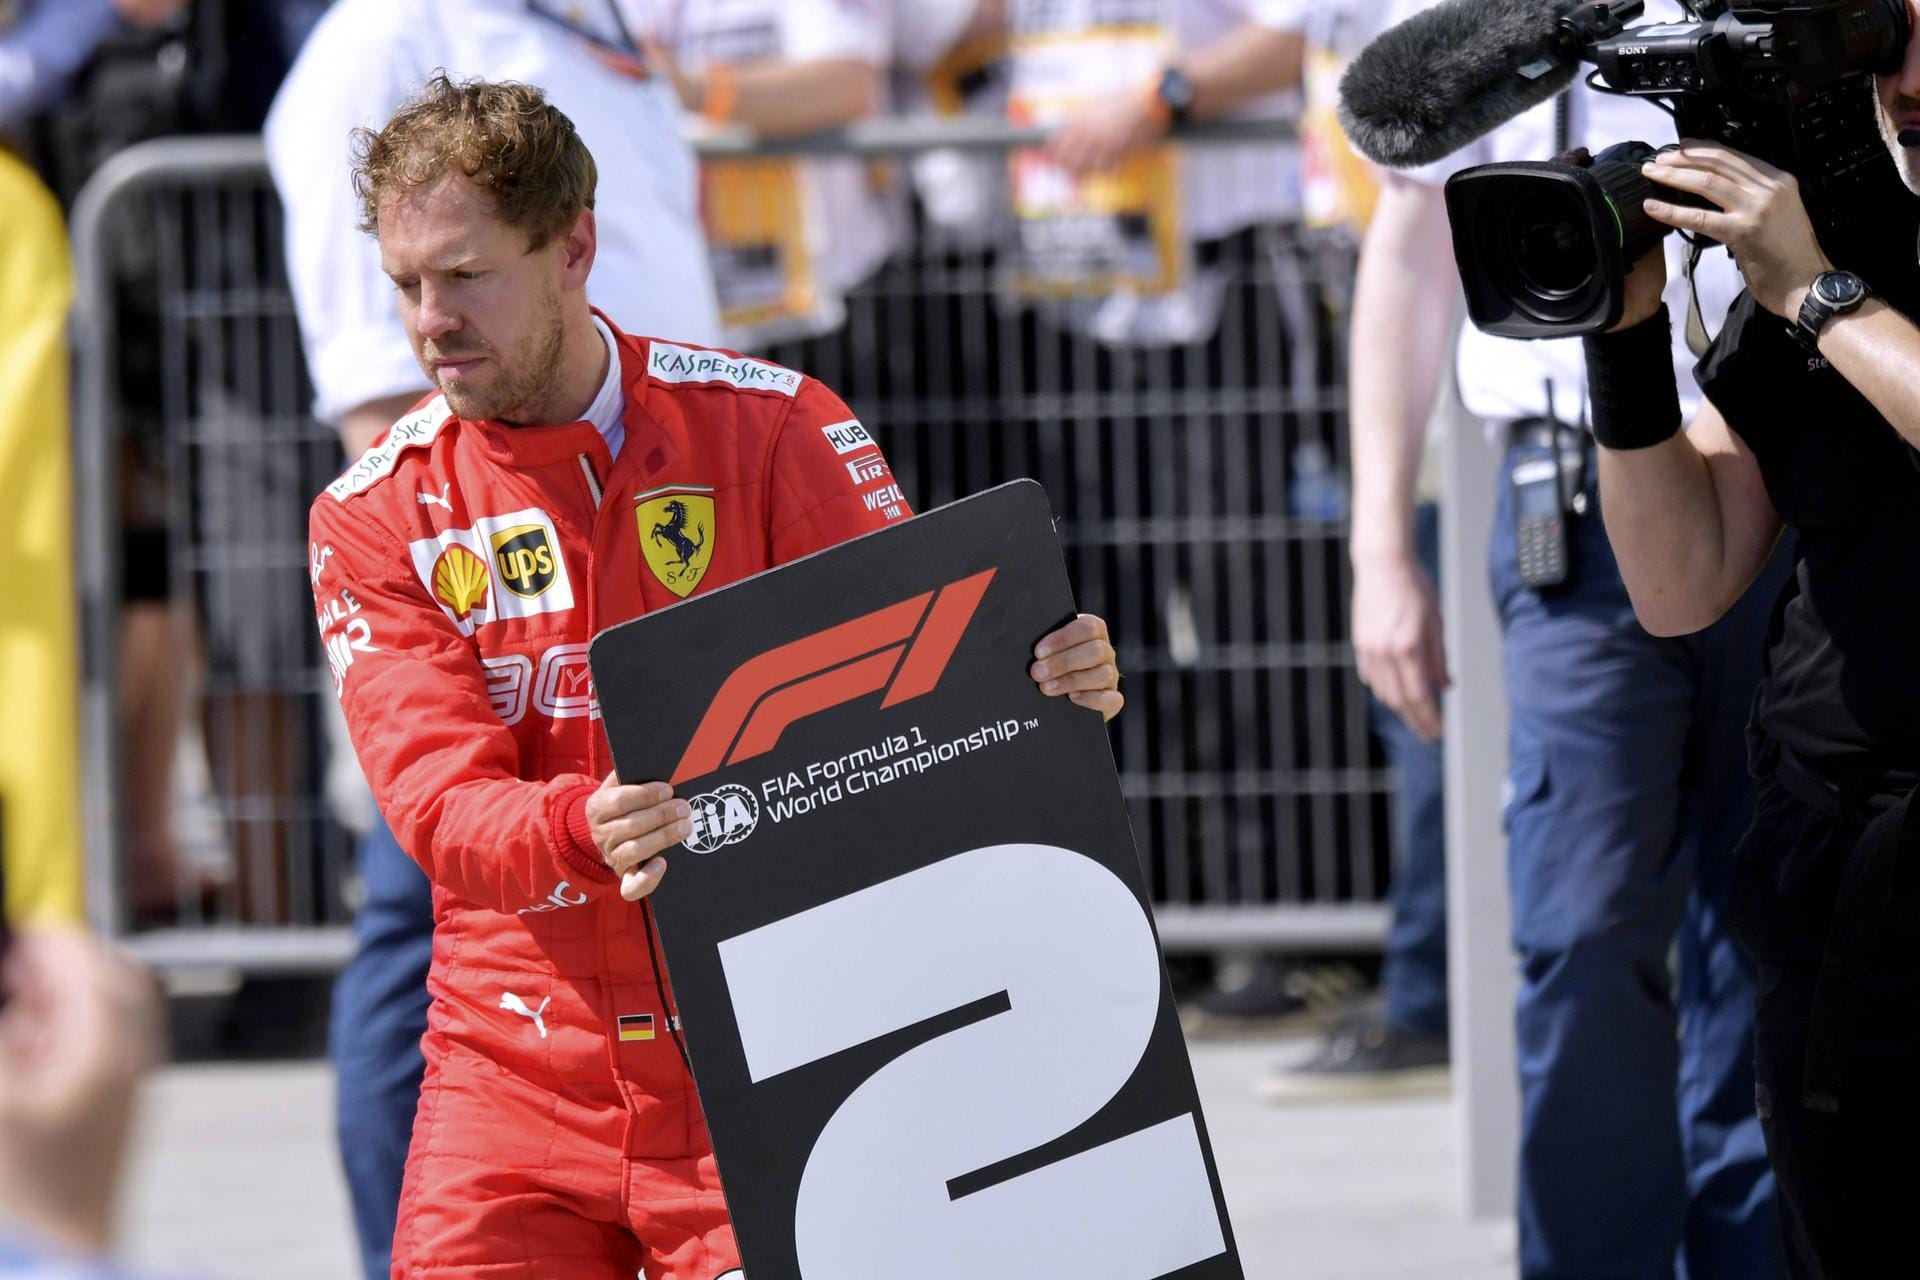 Tuttosport: "Ein einziger kleiner Fehler lastet wie ein Fels auf Ferraris Zukunft. Vettel siegt, doch wegen einer Strafe muss er sich mit Platz zwei begnügen. Dieser harte Schlag ist wieder einmal ein Beweis dafür, dass diese Saison verhext ist. Ferrari sendet immerhin Lebenszeichen, der Kampf um den Titel ist noch offen."